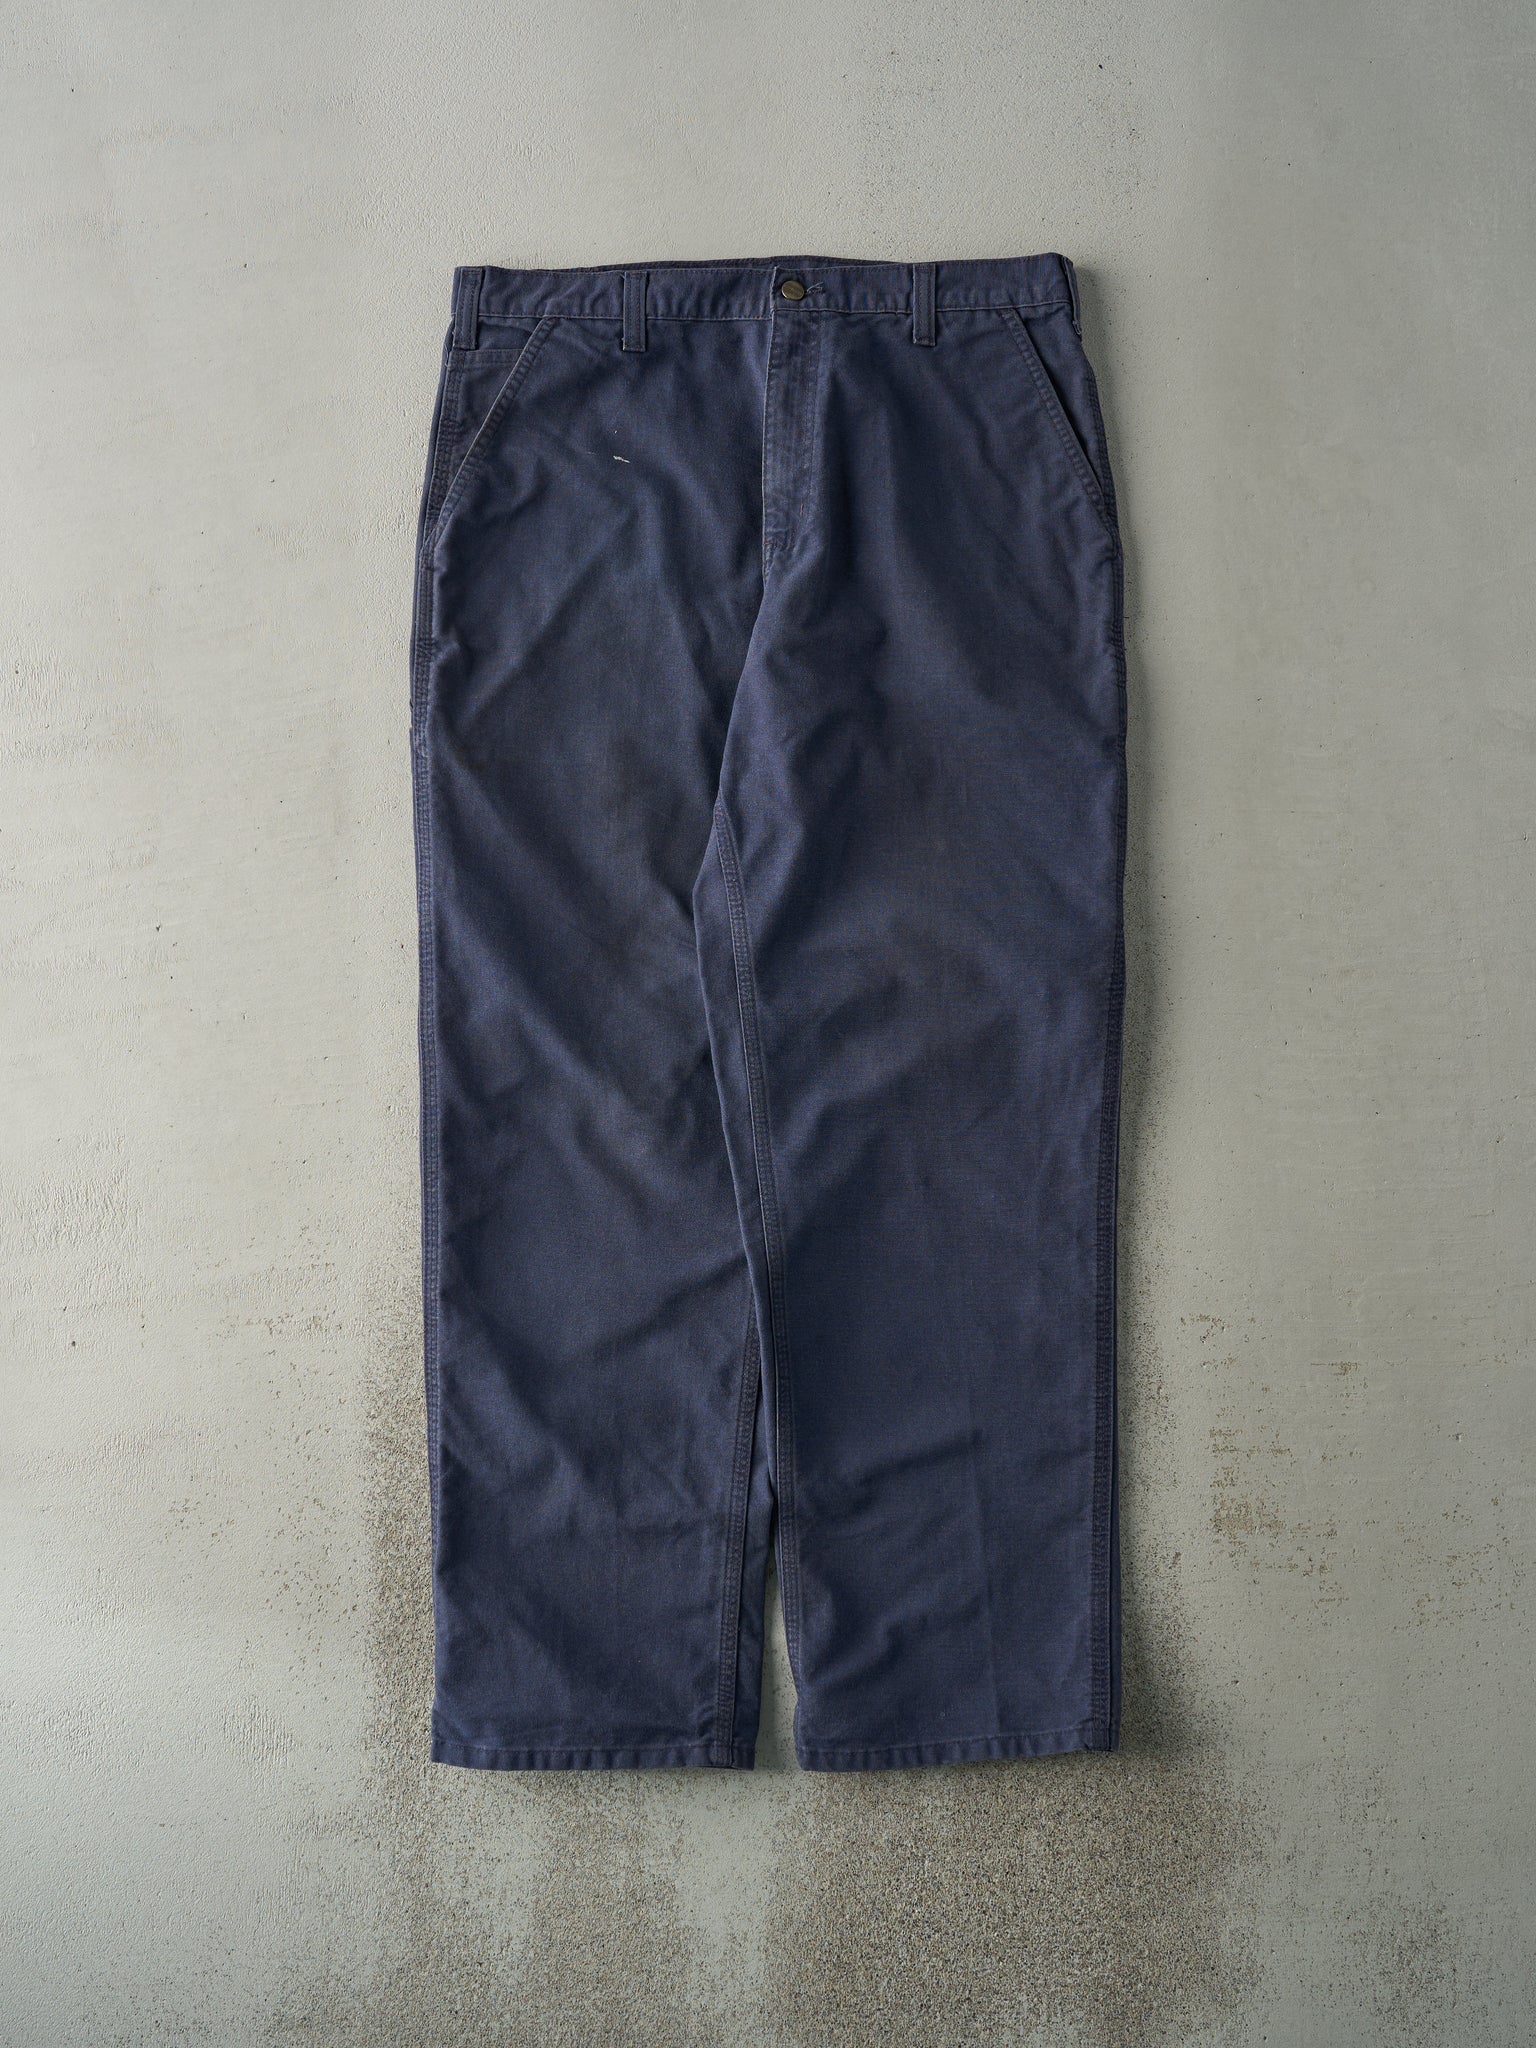 Vintage Y2K Navy Blue Dungaree Fit Carhartt Work Pants (36x32.5)